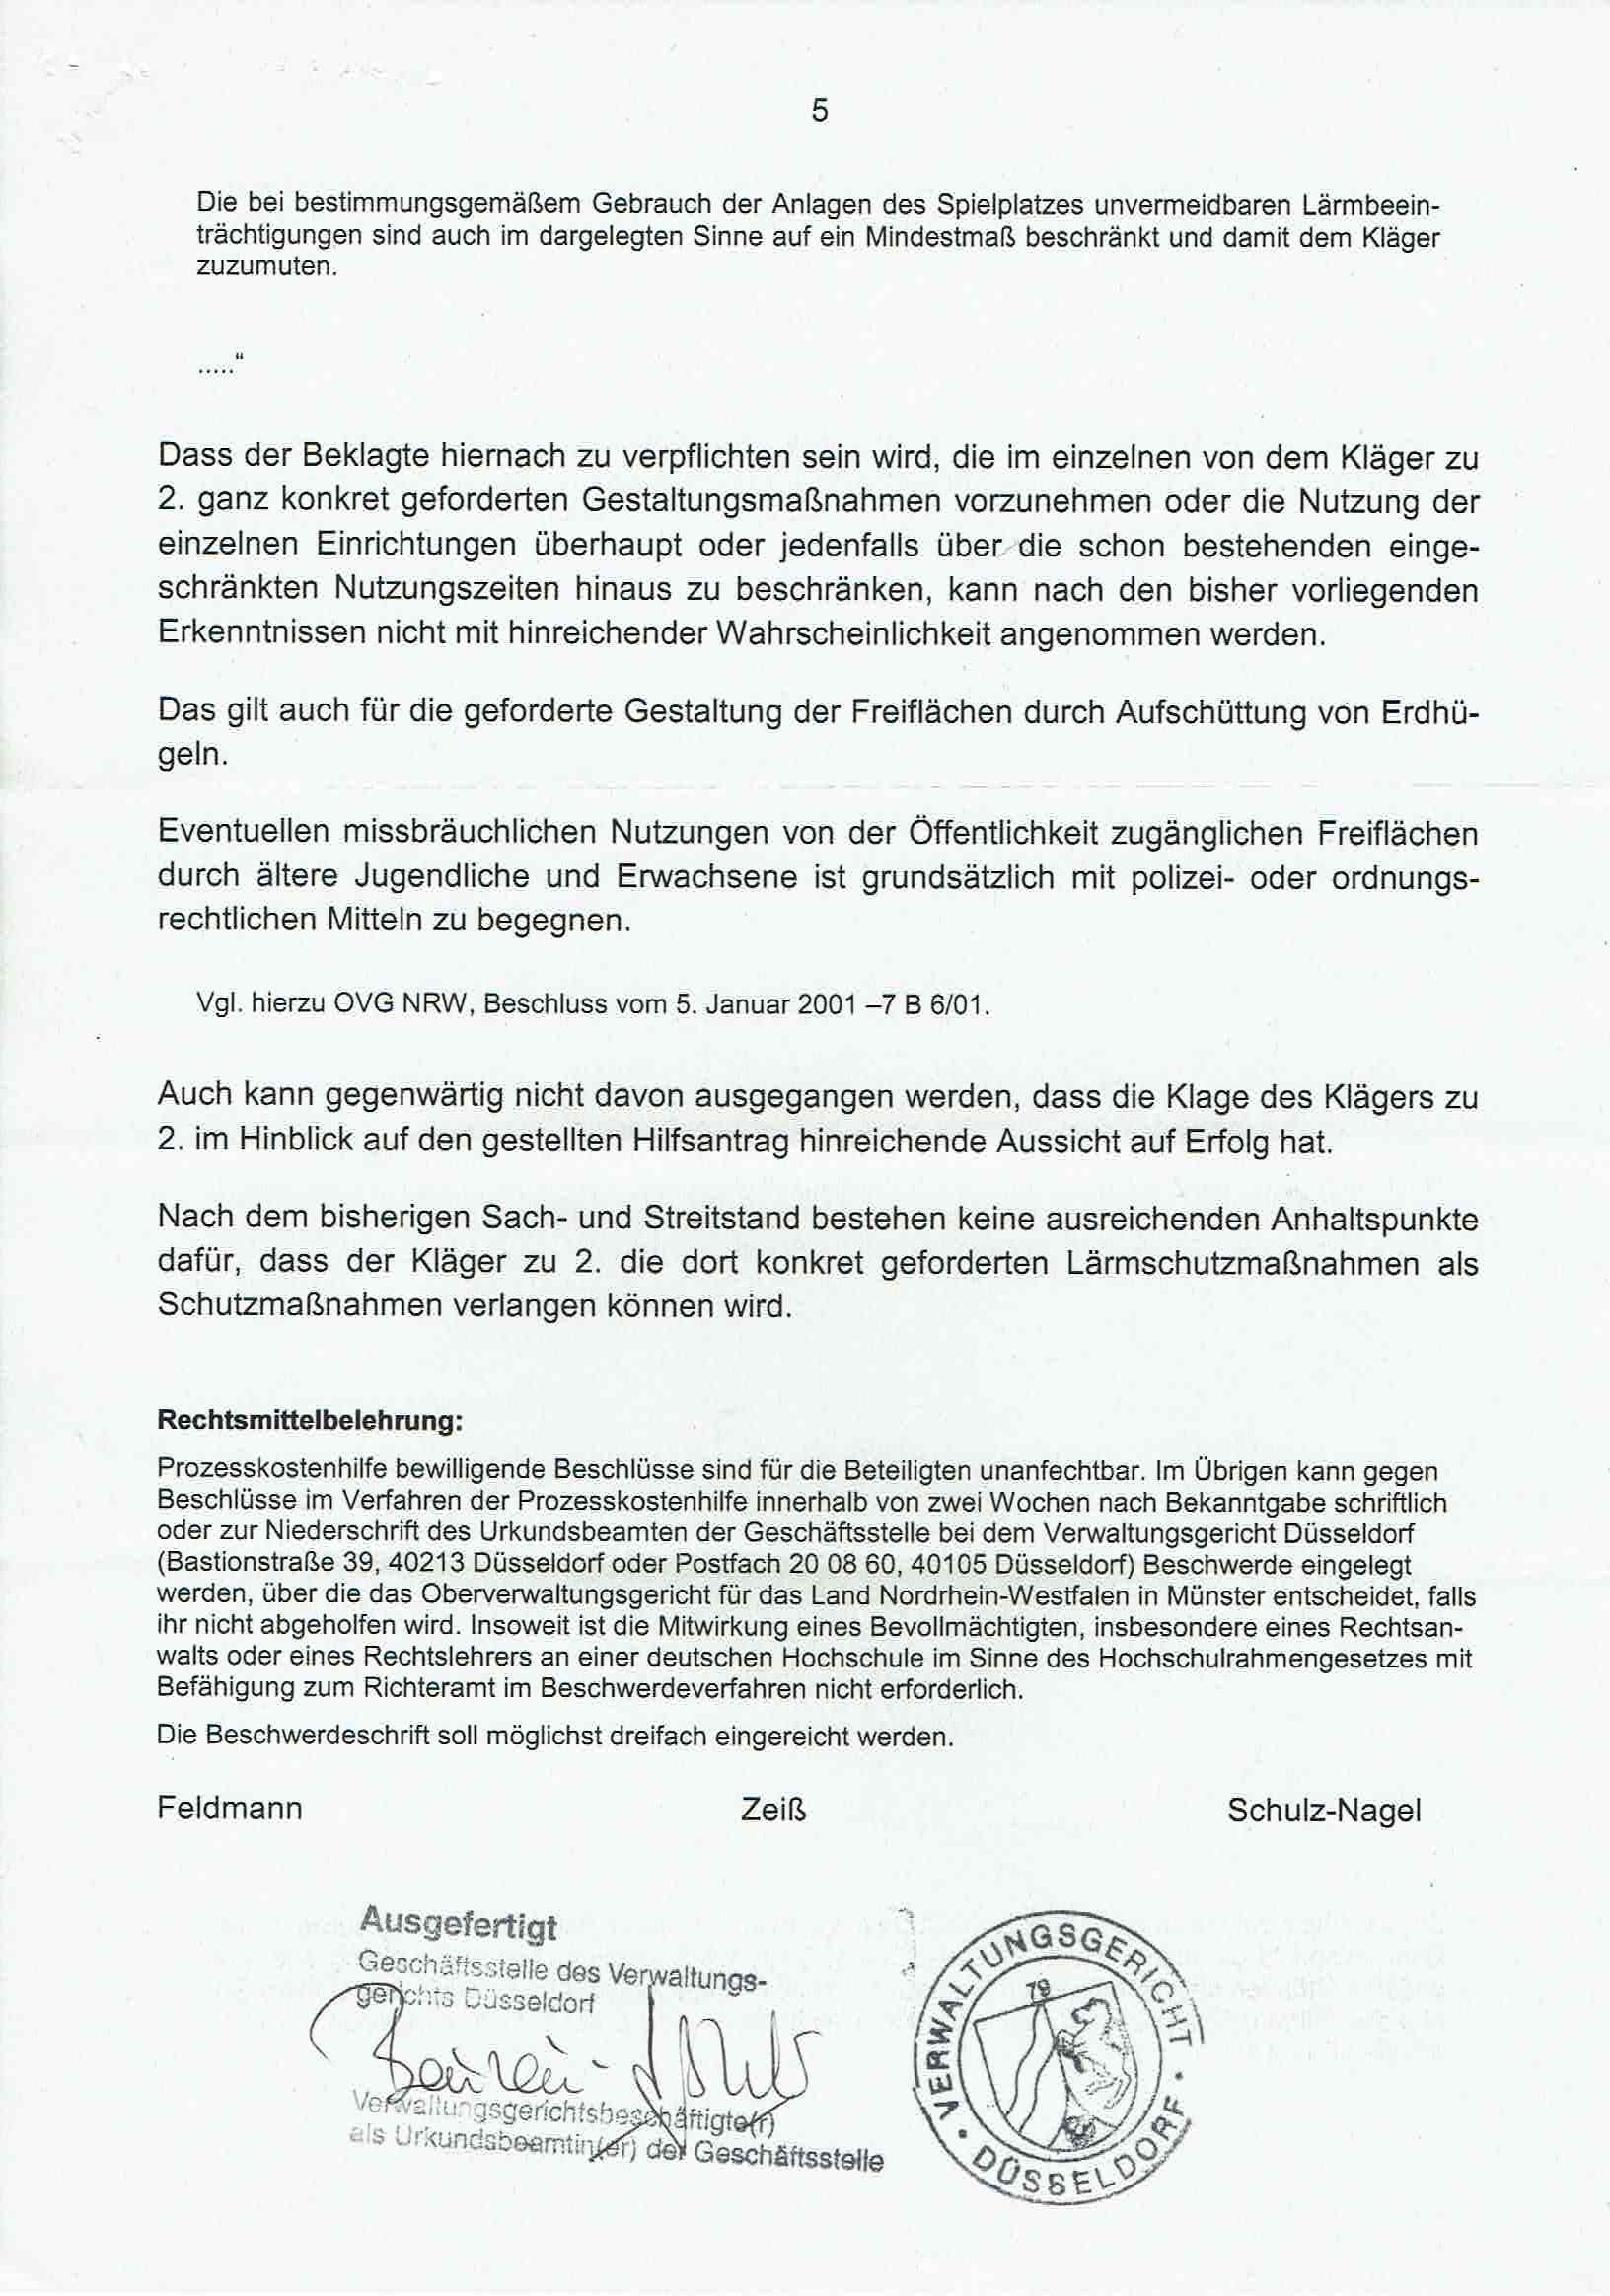 Bescheid der Richter Ulrich Feldmann, Gudrun Zeiß und Rita Schulz-Nagel, Verwaltungsgericht Düsseldorf, über die Ablehnung von Prozeßkostenhilfe vom 05.02.2009, S. 5